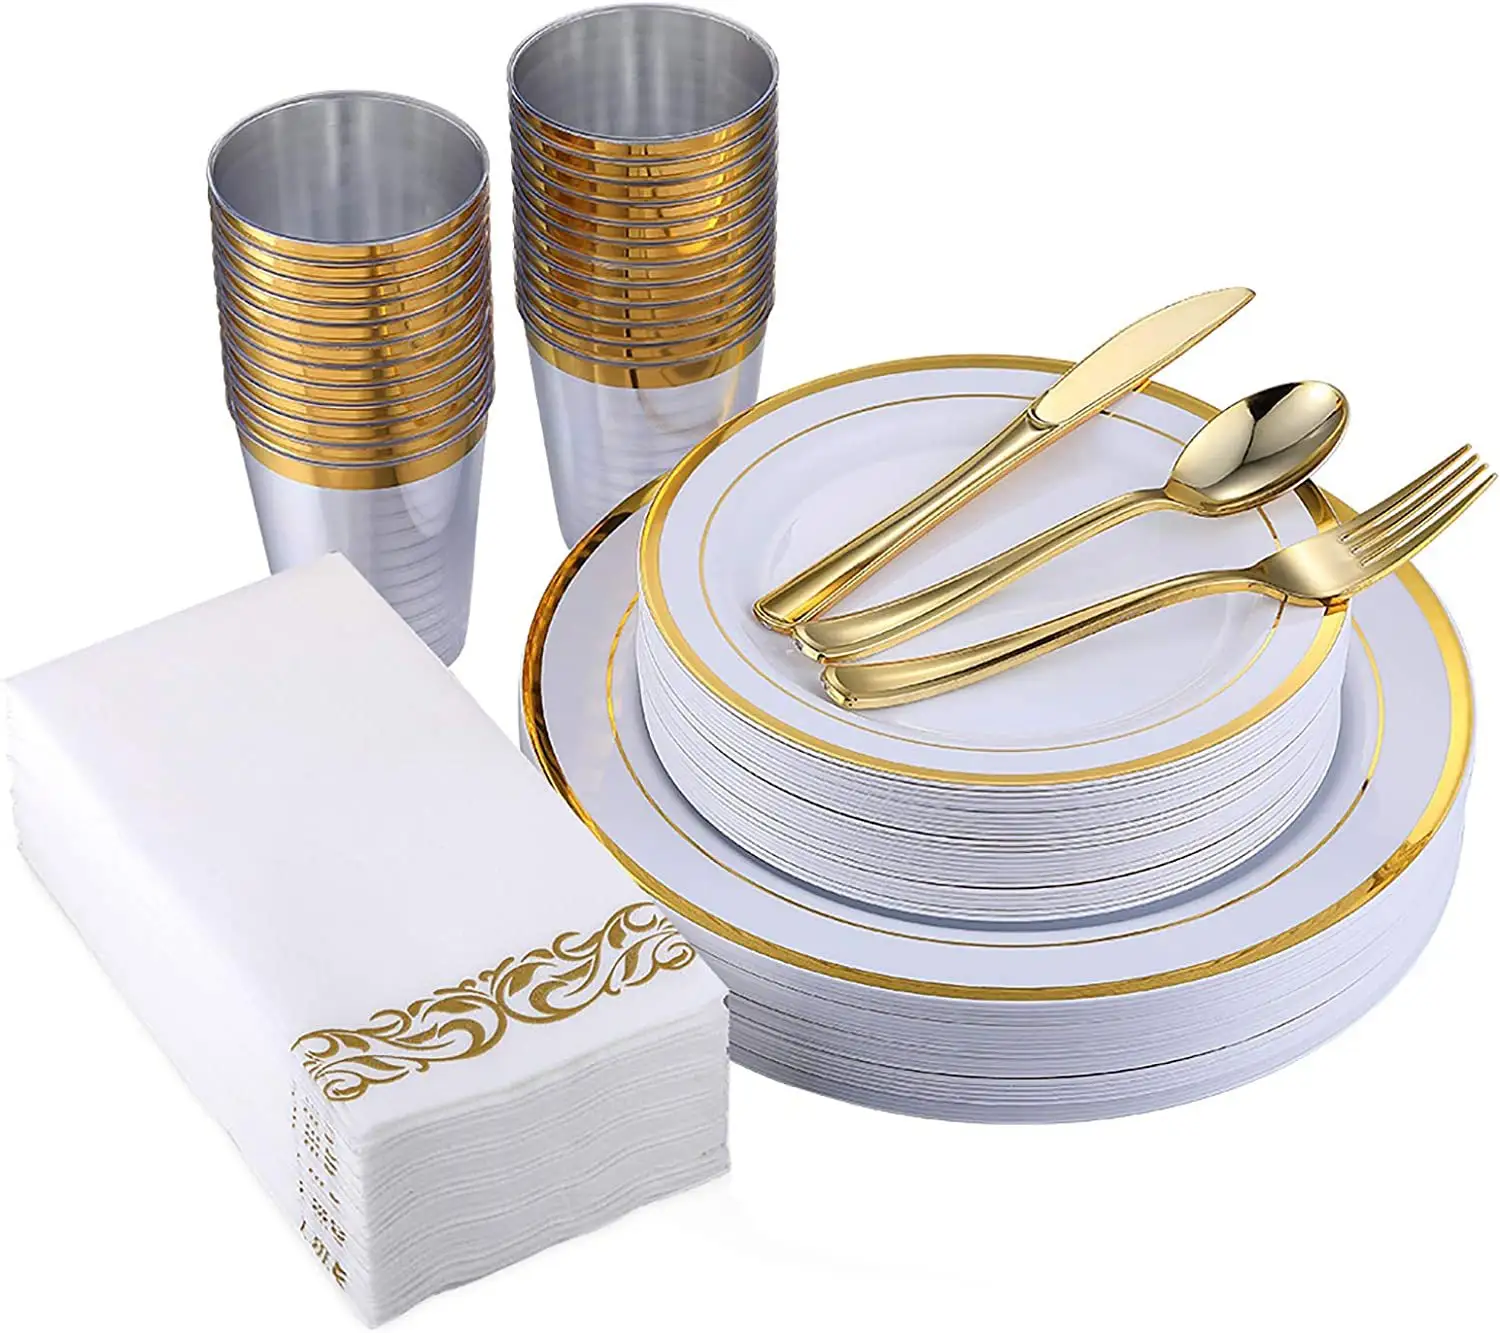 Charger Plates Rim Wholesale Louça De Casamento Branca com Ouro Conjuntos De Louça De Luxo Teller Set Plástico 12 Pessoa